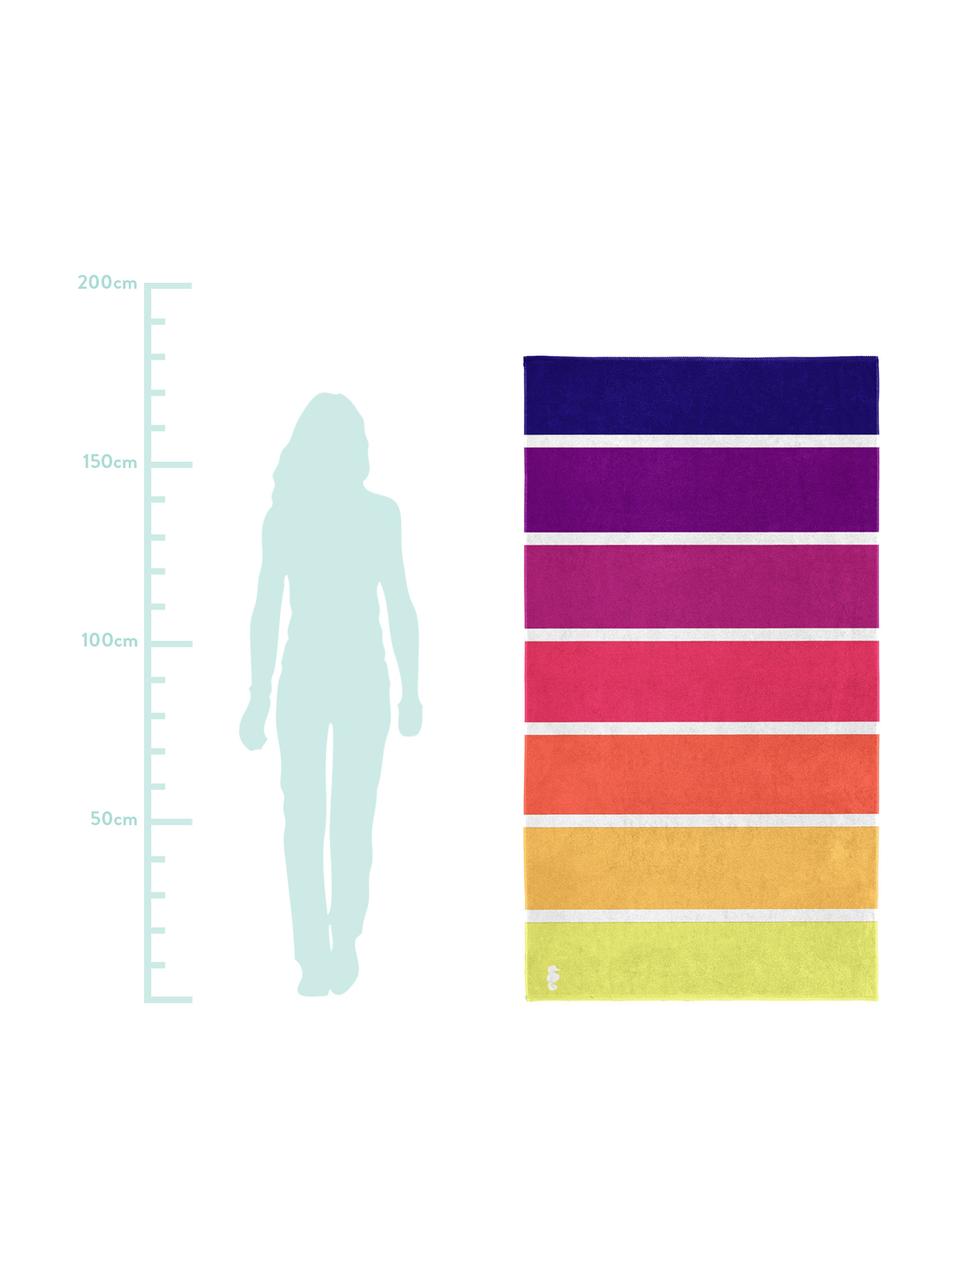 Strandtuch Marbella, 100% Baumwolle, Gelb, Orange, Pink, Lila, Violett, 100 x 180 cm